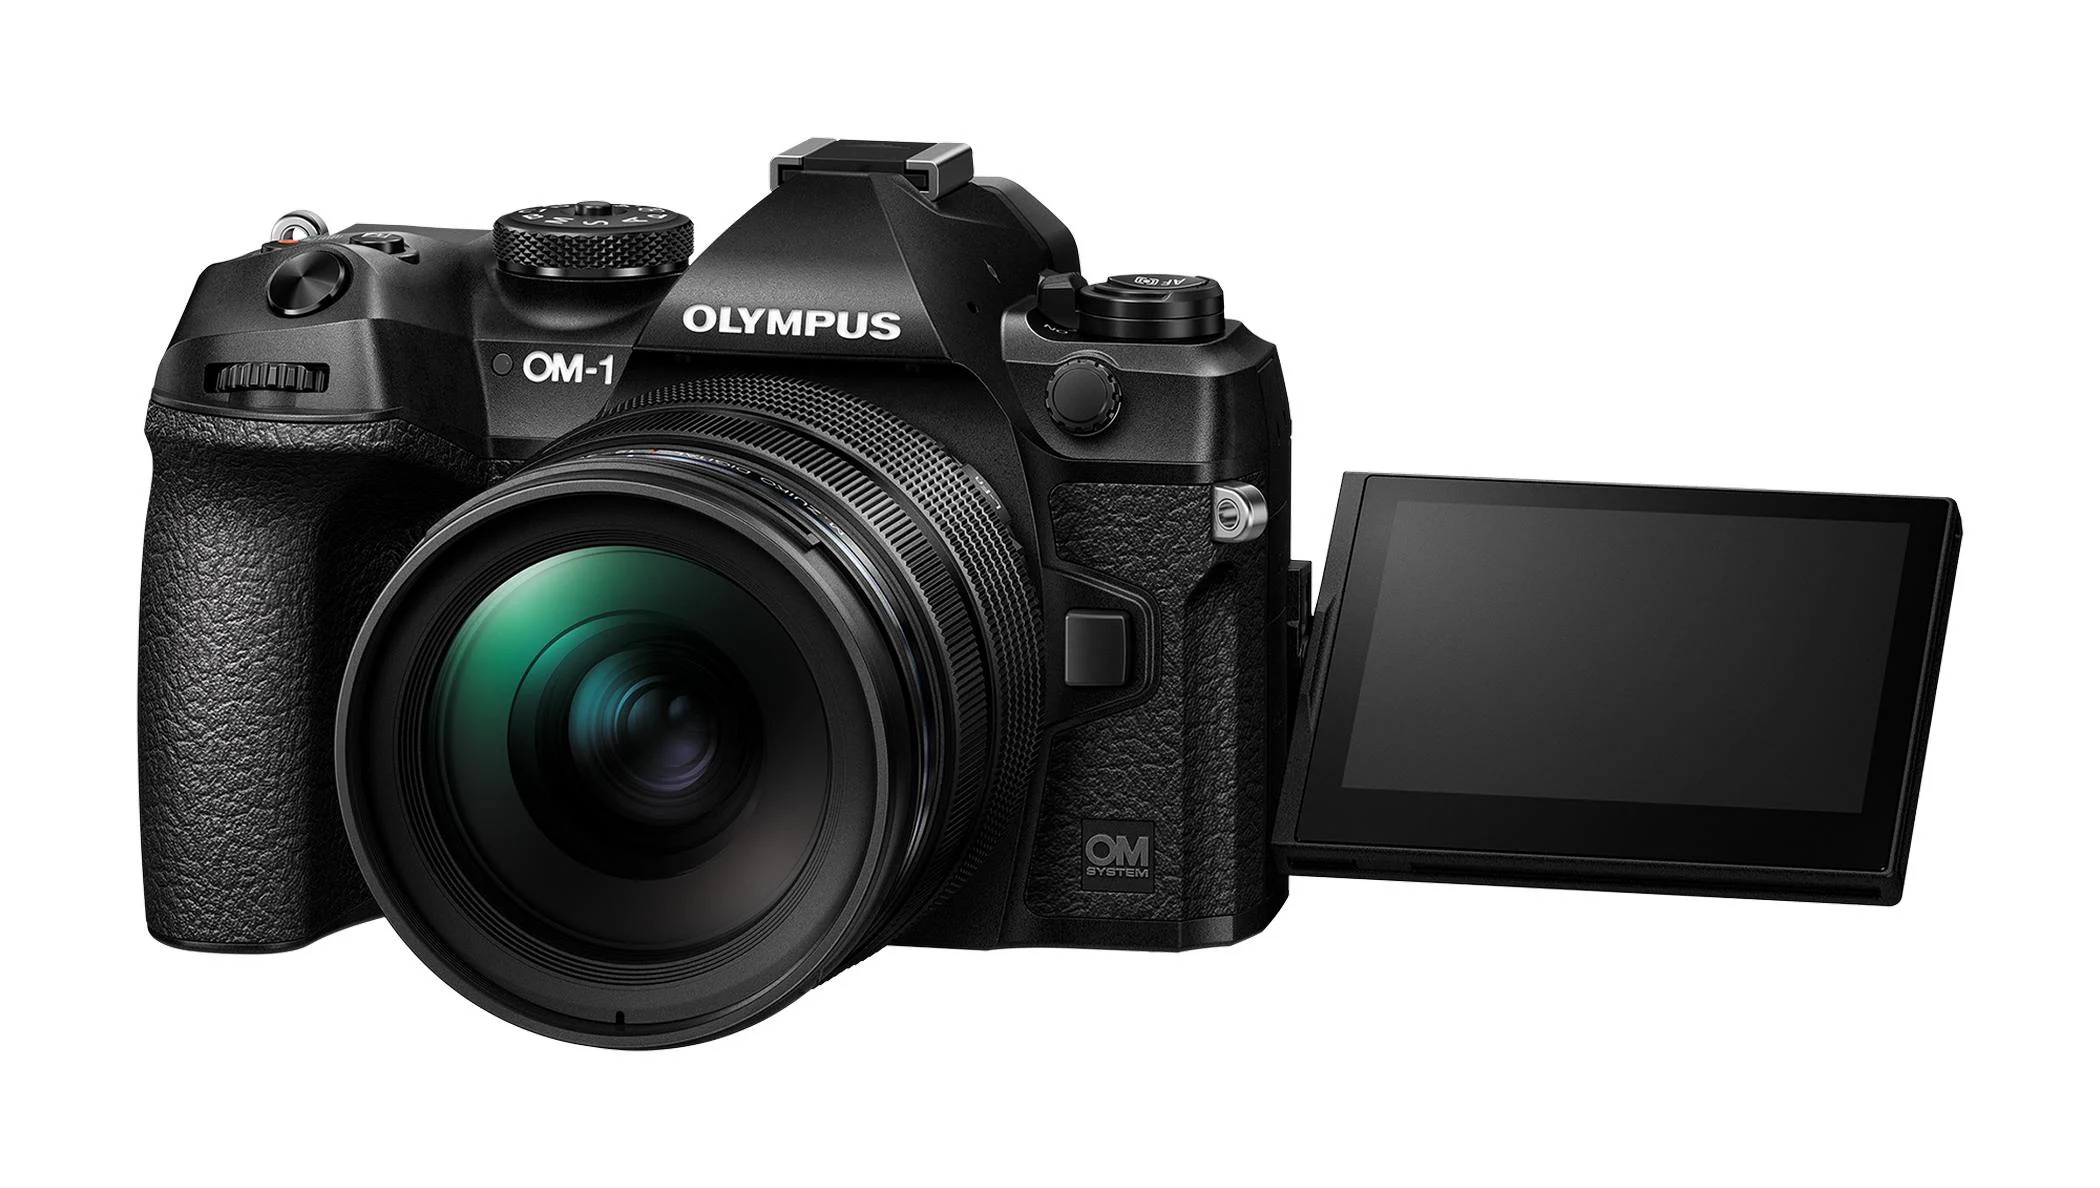 50 RAW кадров в секунду и цена $2200: анонсировала флагманская камера OM System OM-1 эры пост-Olympus